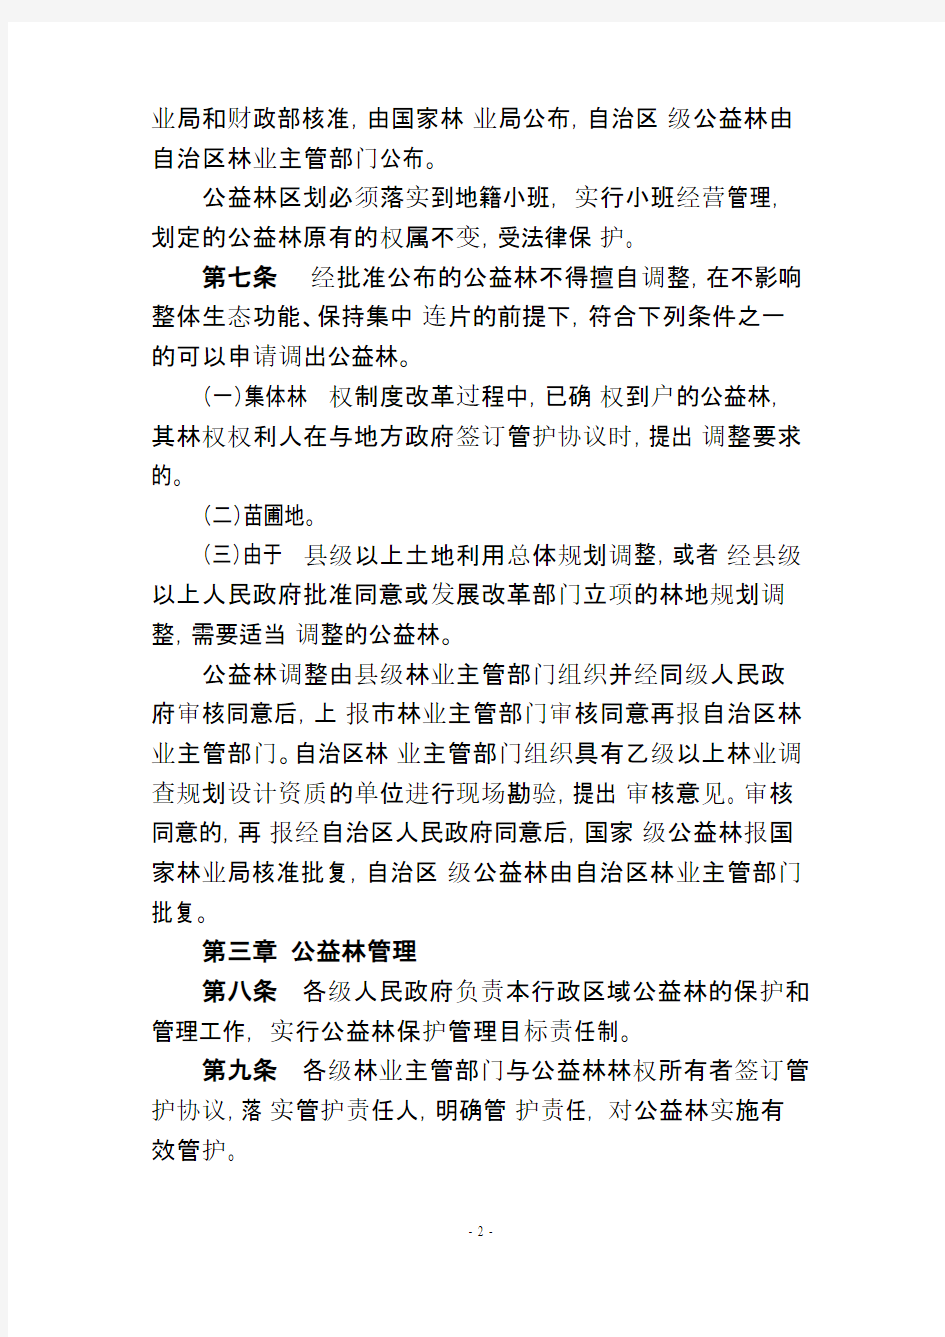 【免费下载】广西壮族自治区公益林管理办法